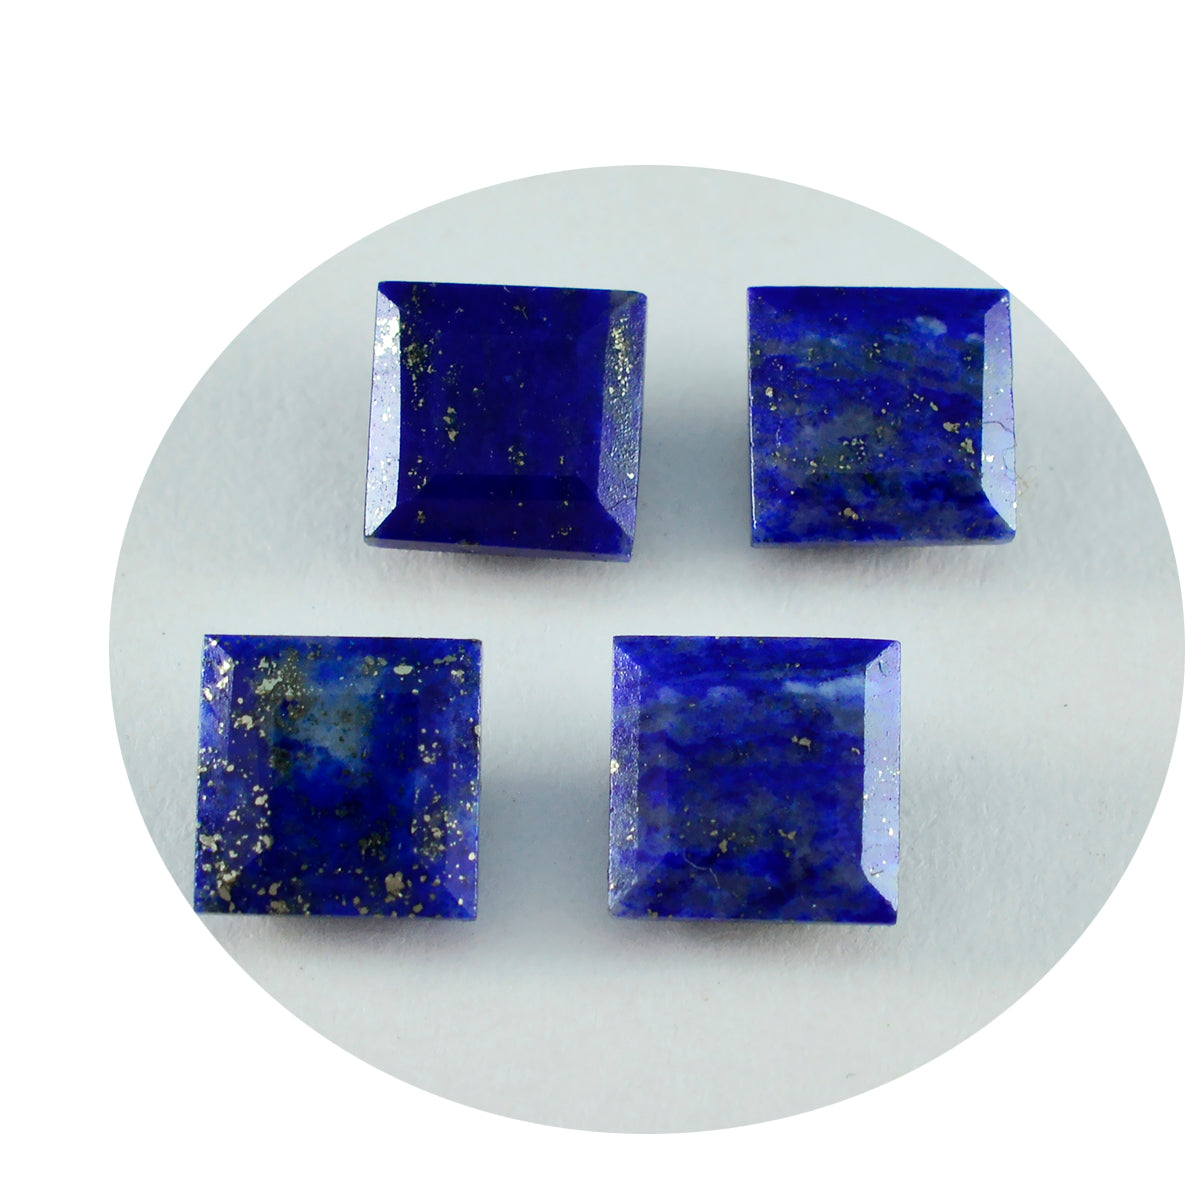 riyogems 1 шт. настоящий синий лазурит ограненный 9x9 мм квадратной формы драгоценный камень удивительного качества